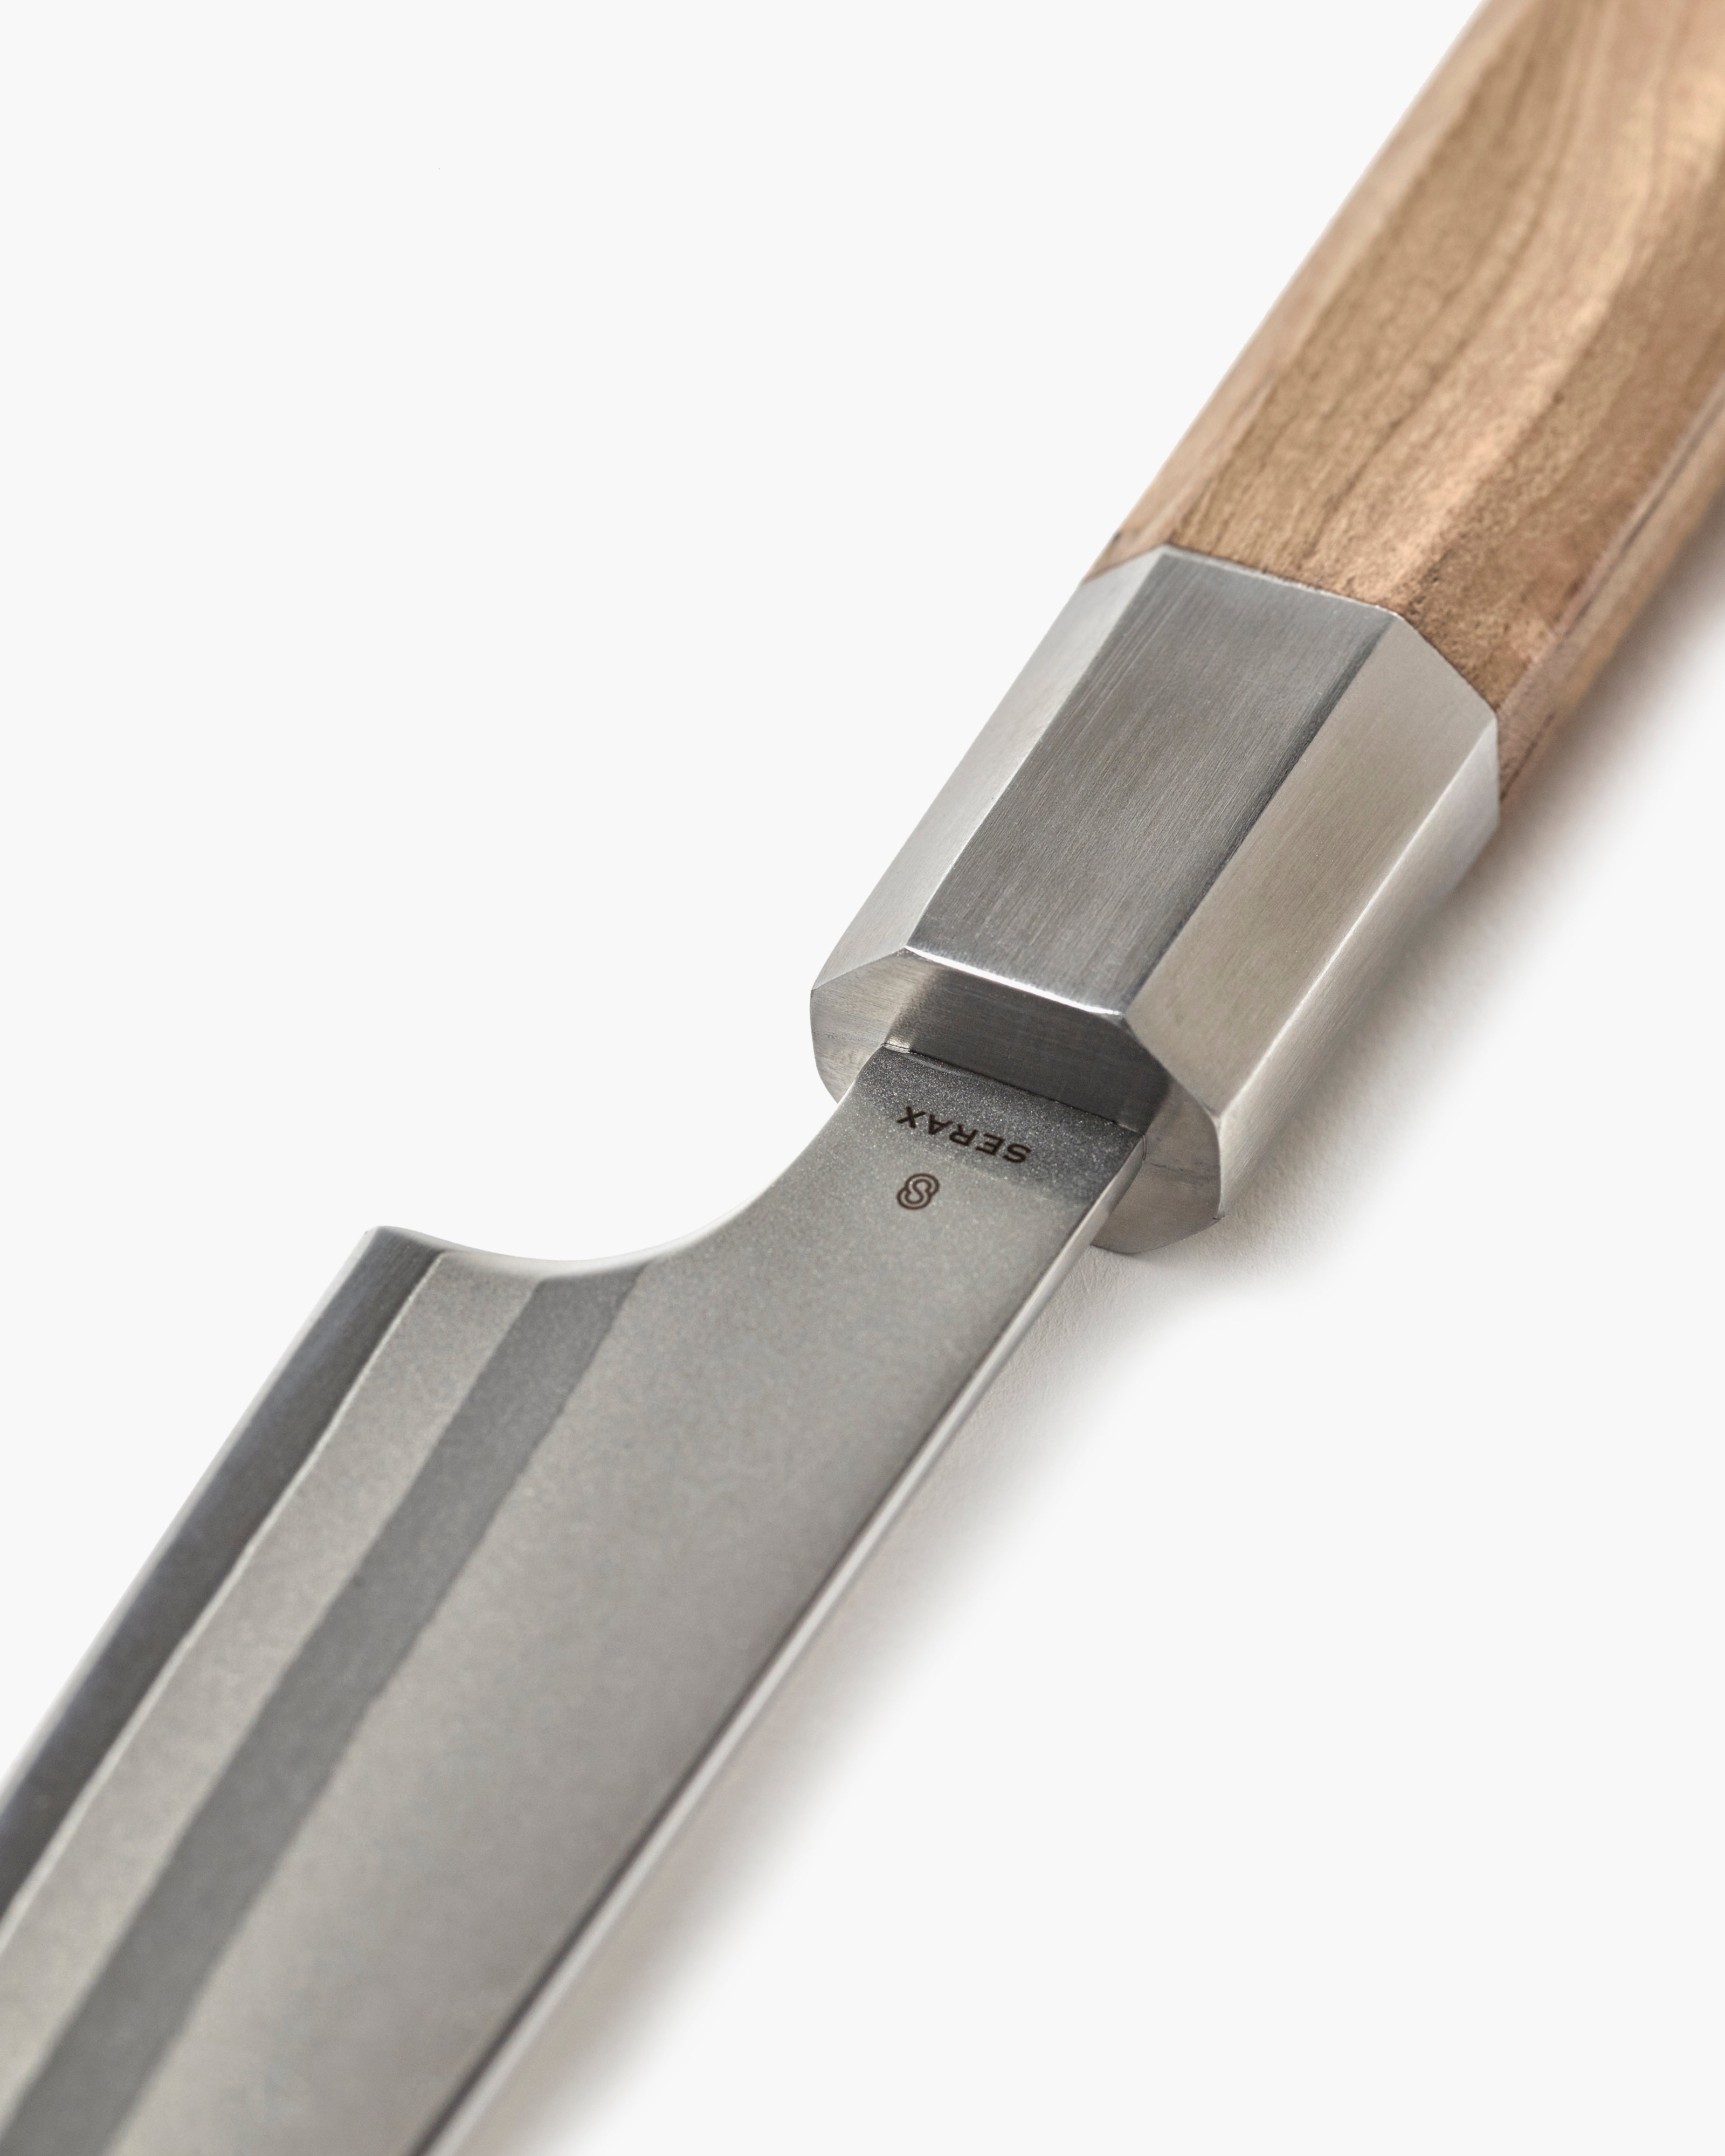 couteaux de cuisine, couteau professionnel - couteau à éplucher, Serax